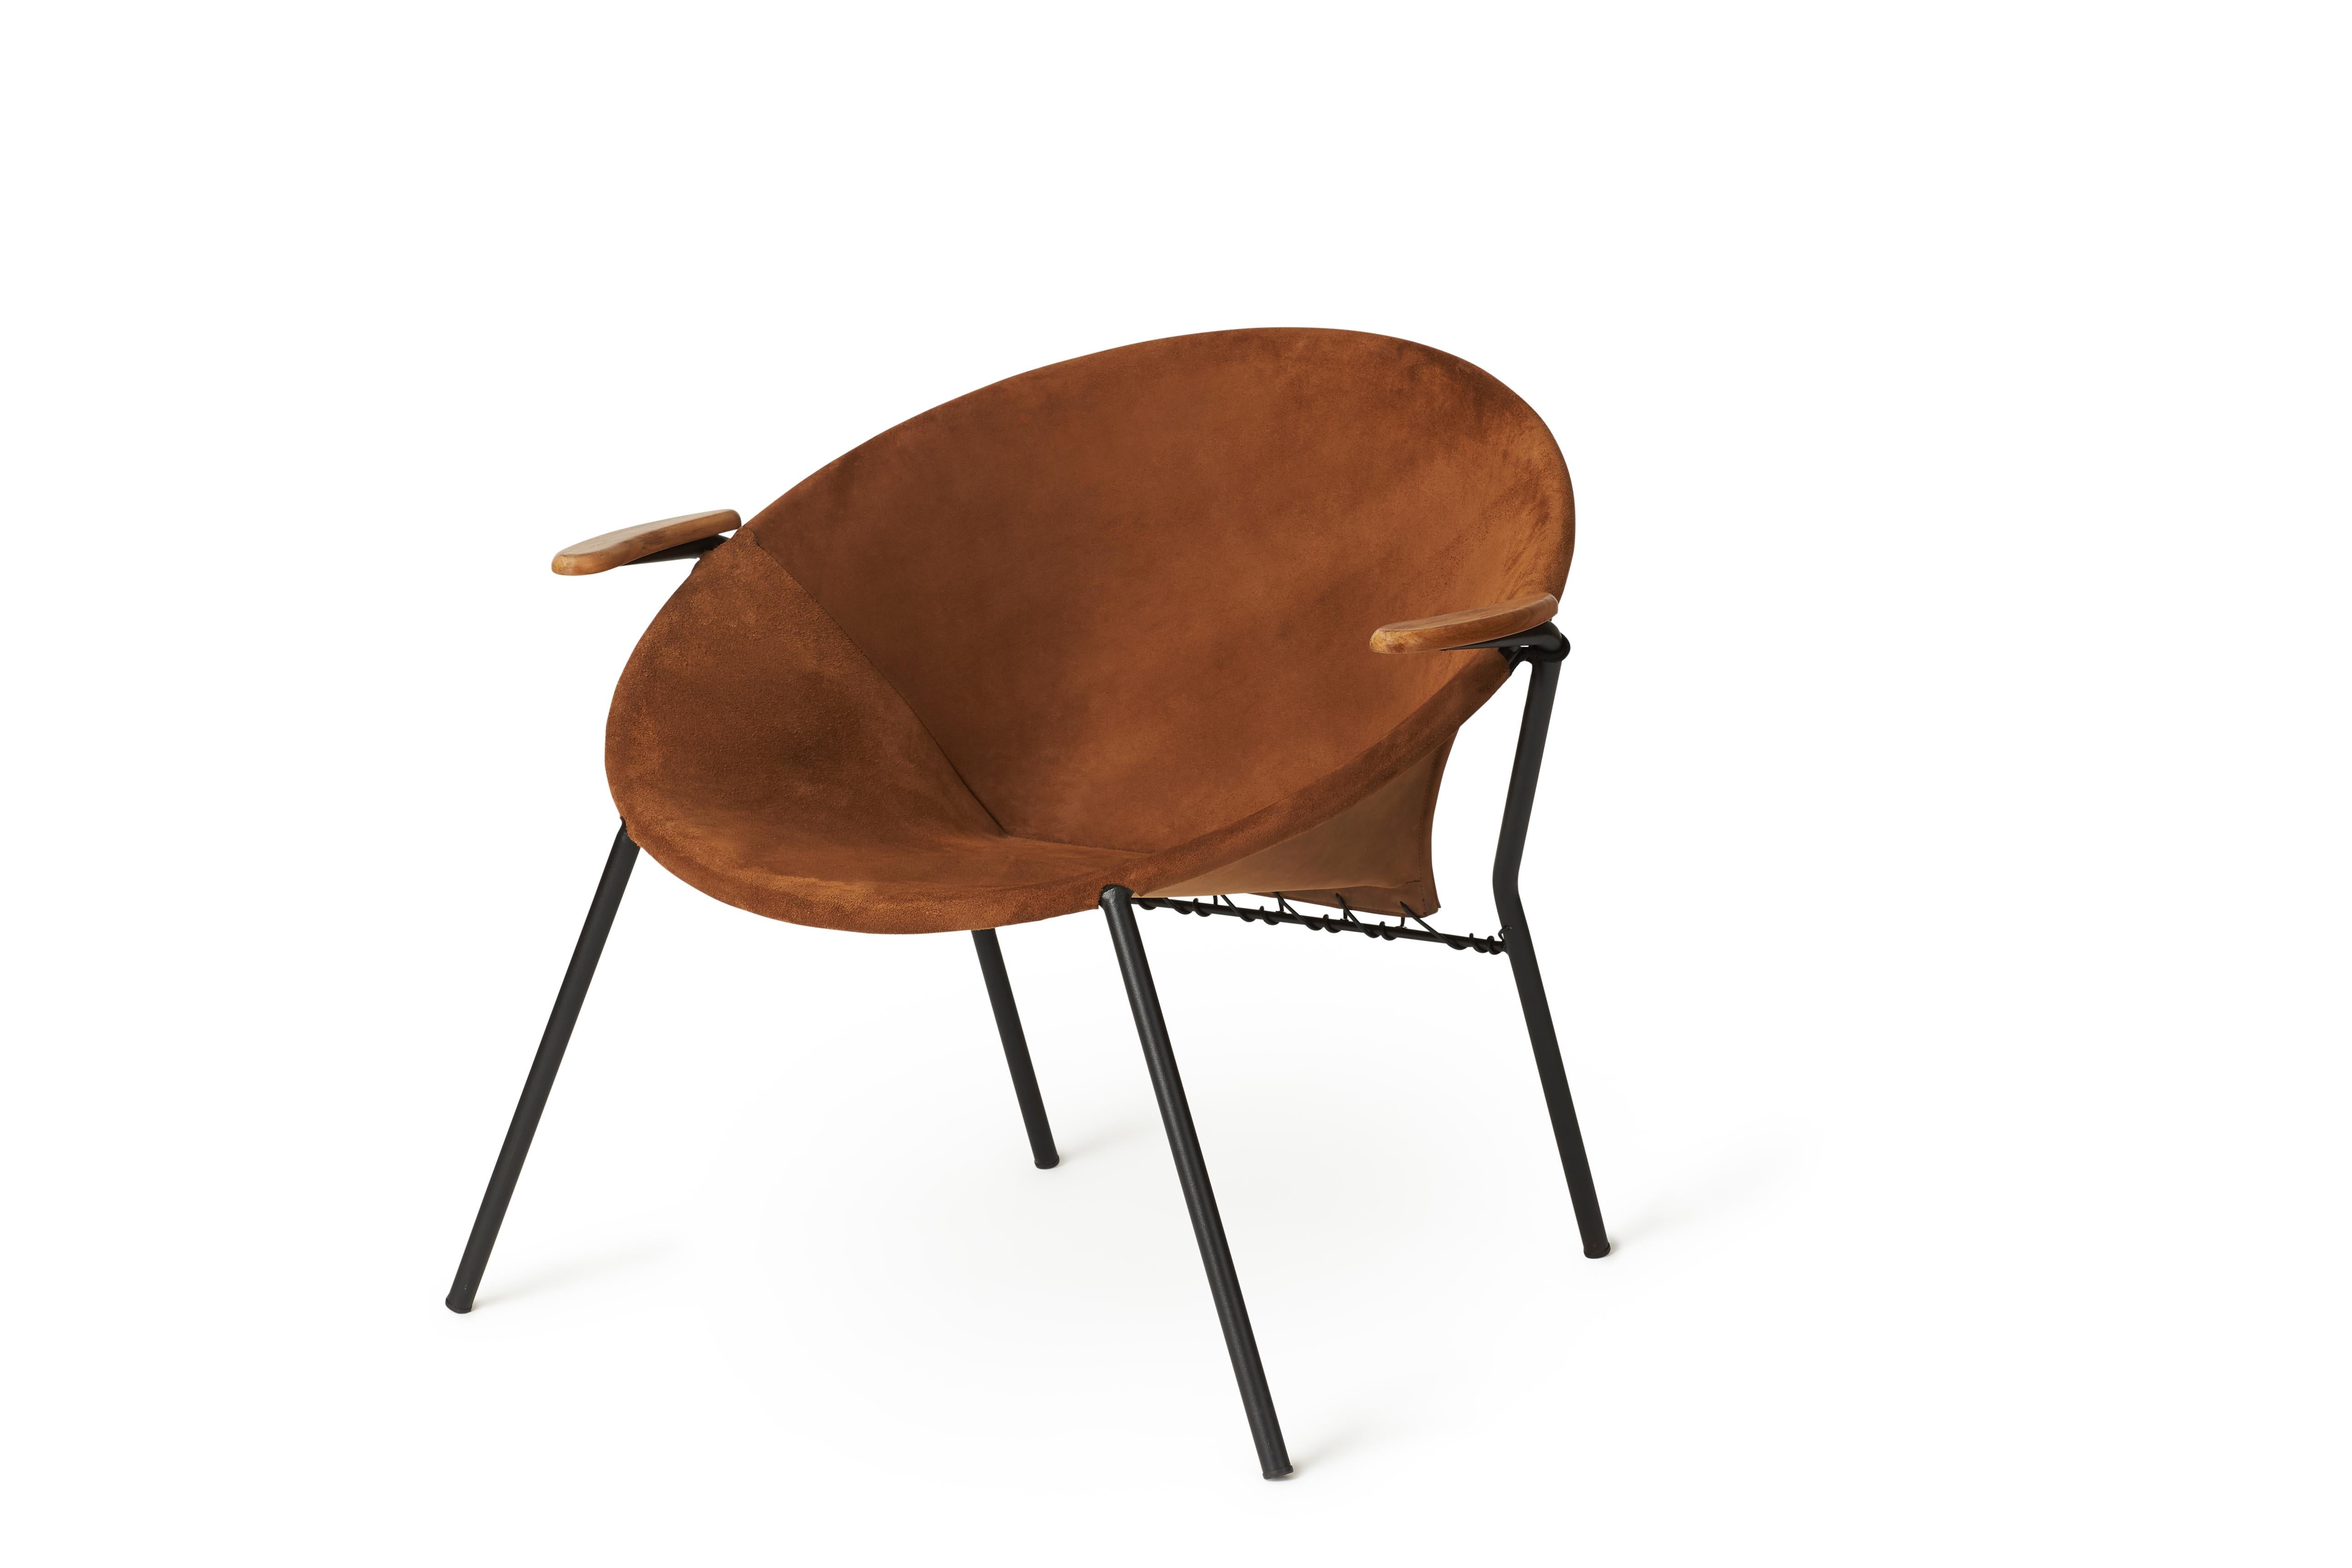 L'emblématique chaise longue en forme de ballon au look industriel est l'œuvre du célèbre architecte danois Hans Olsen, qui l'a conçue dans les années 1950. Le design de la chaise longue est brut, ludique et accueillant, faisant appel aux sens avec